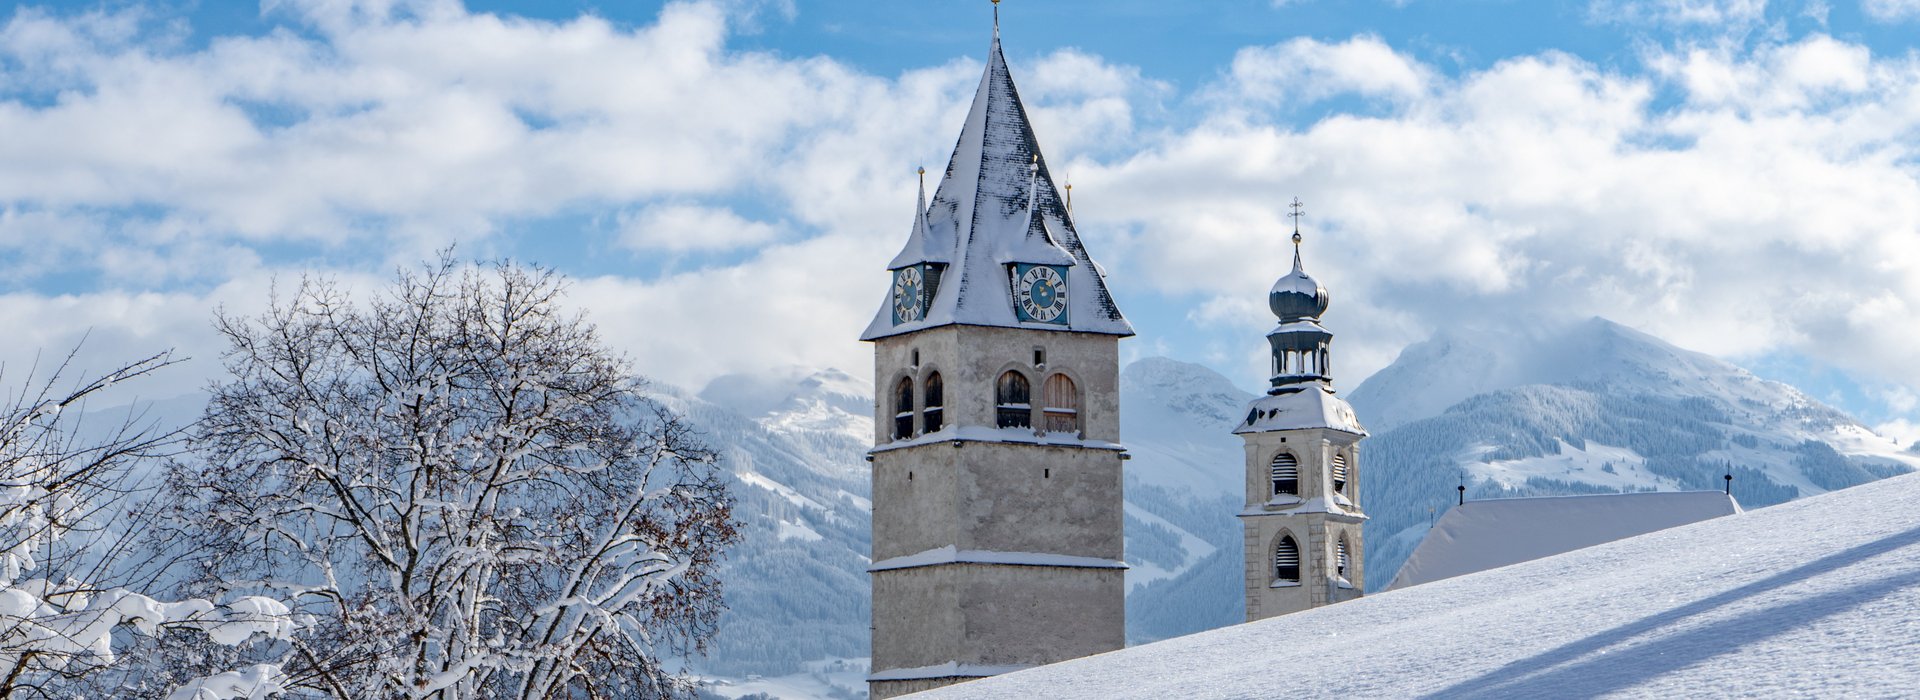 Kitzbüheler Kirche im Winter